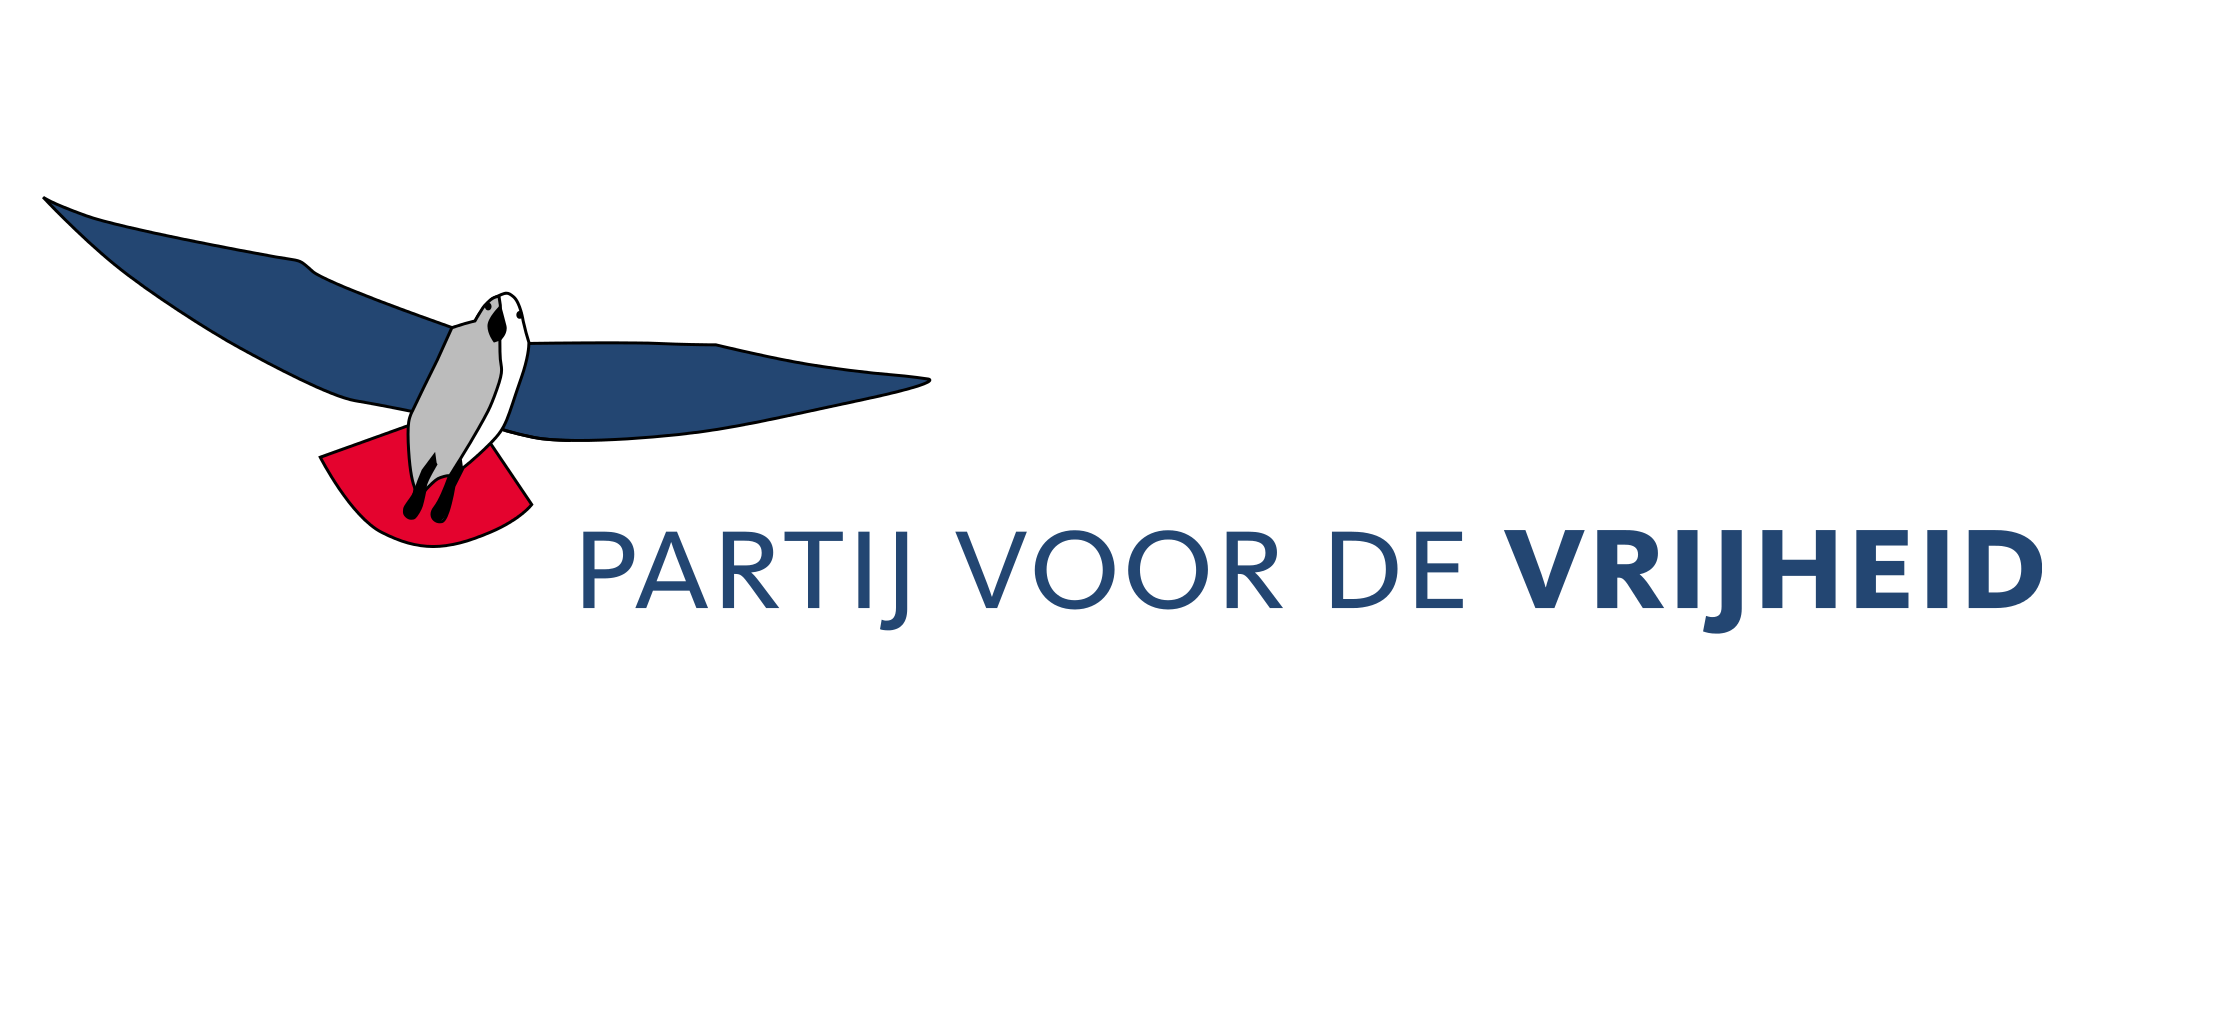 Maakt de PVV nog kans op jouw stem? 13